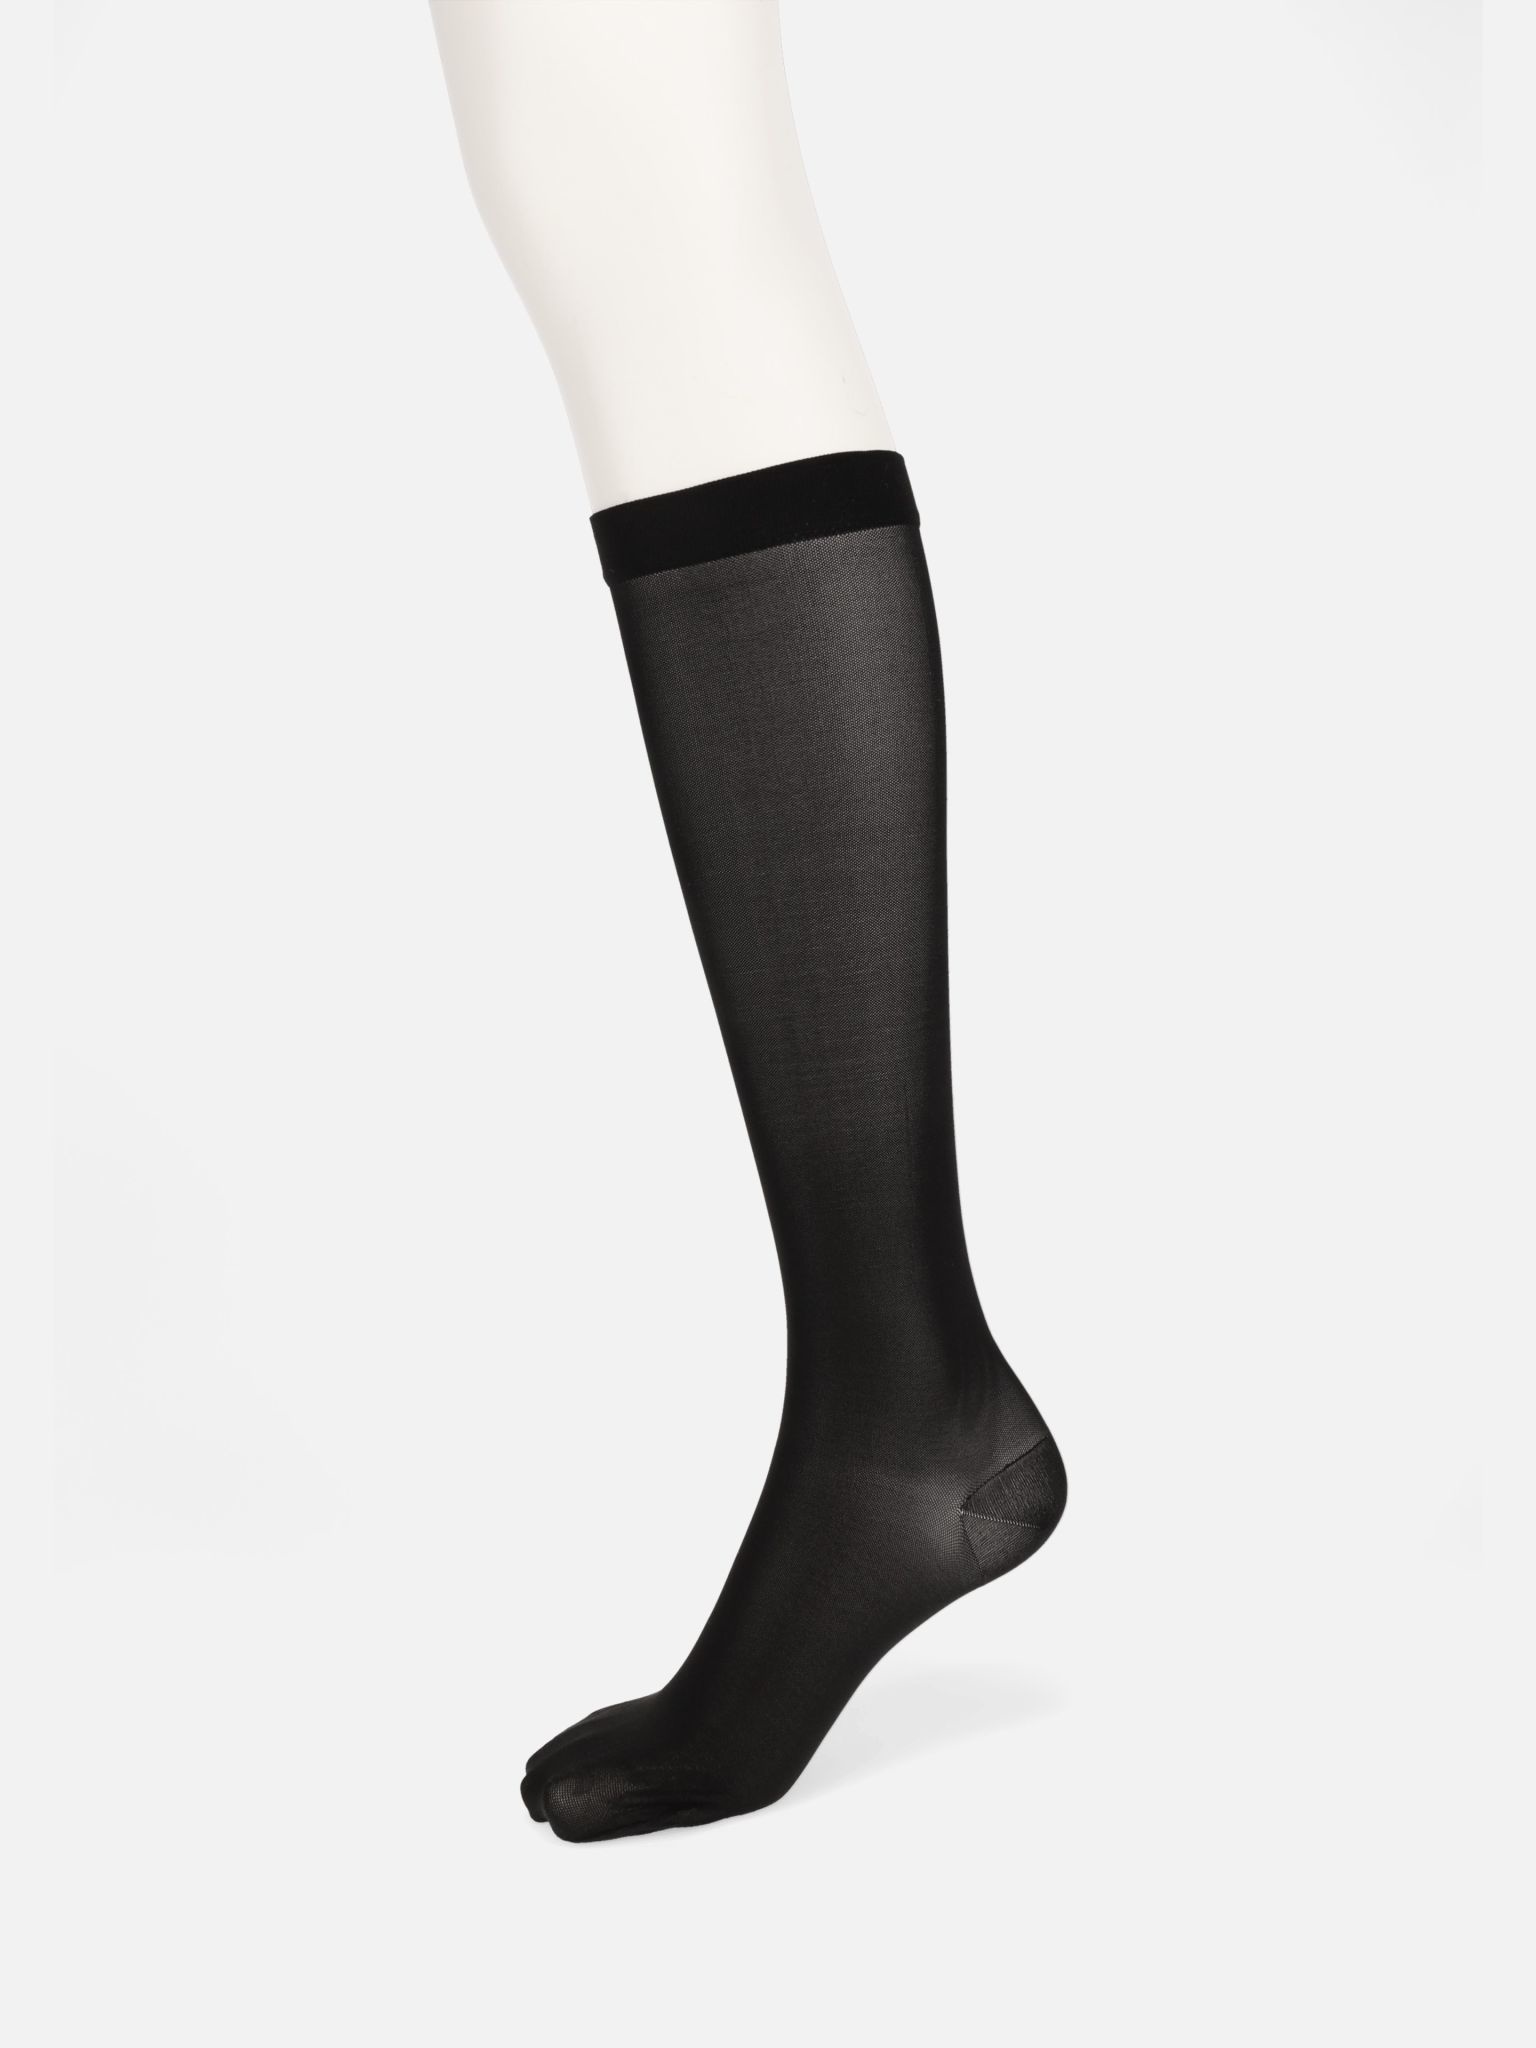 Wholesale Women's 3 Pack Textured Trouser Socks (60 Packs)